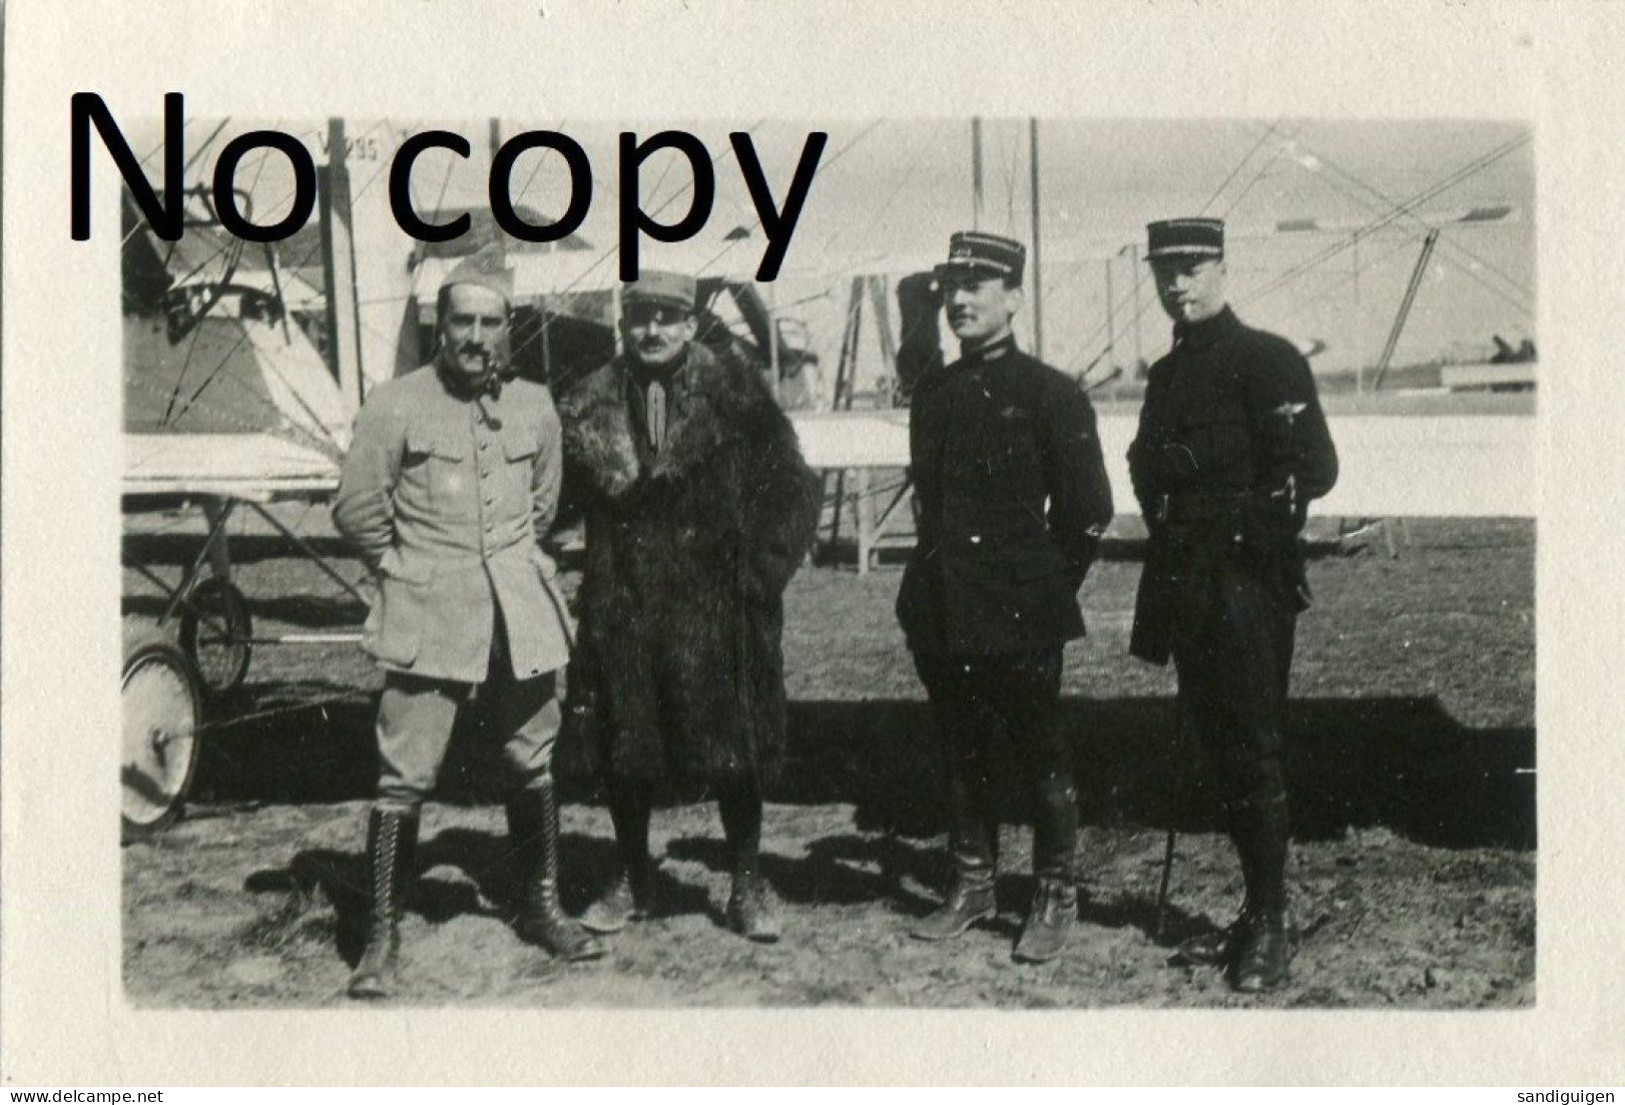 PHOTO FRANCAISE - AVIATEUR ET AVION BIPLAN AU TERRAIN DE BOUY A MOURMELON LE GRAND MARNE - GUERRE 1914 1918 - War, Military